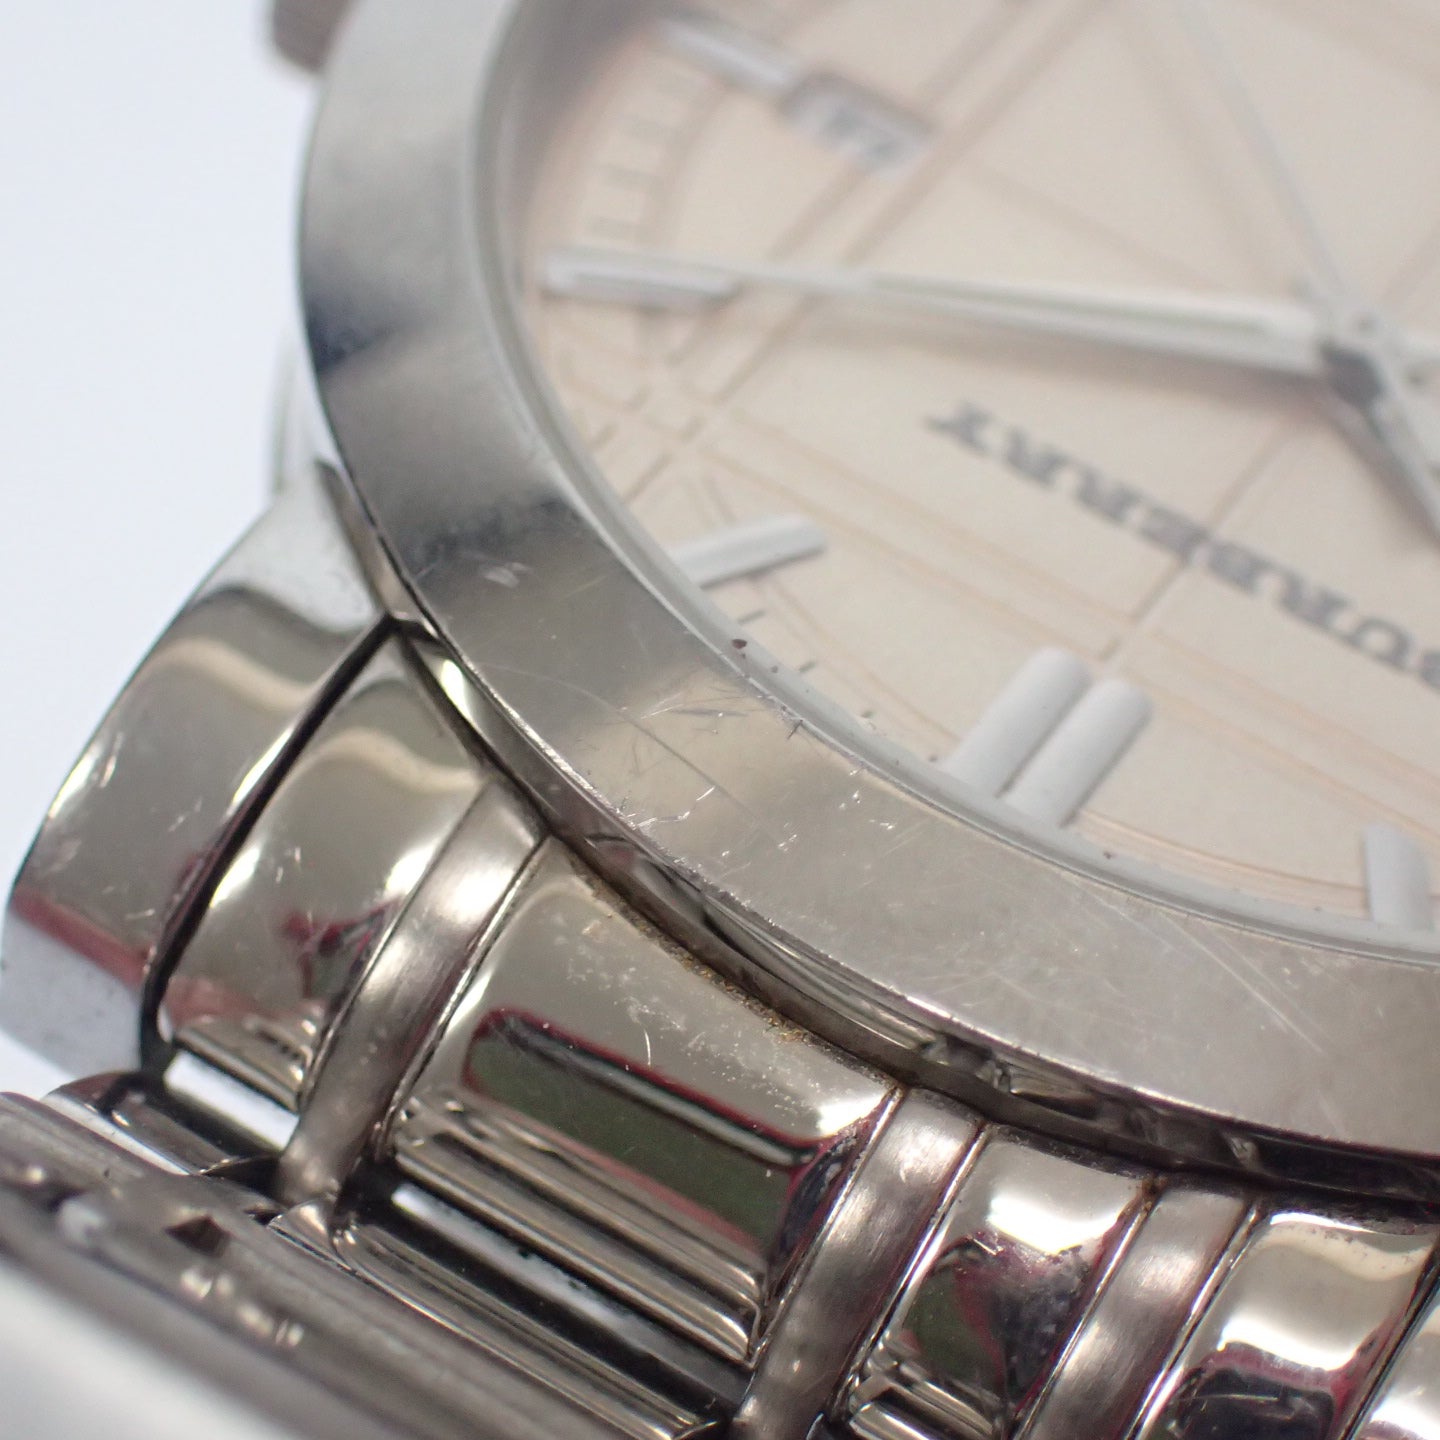 バーバリー 腕時計 ヘリテージ クオーツ シルバー 文字盤シャンパンゴールド BU1352 箱付き BURBERRY【AFI19】【中古】